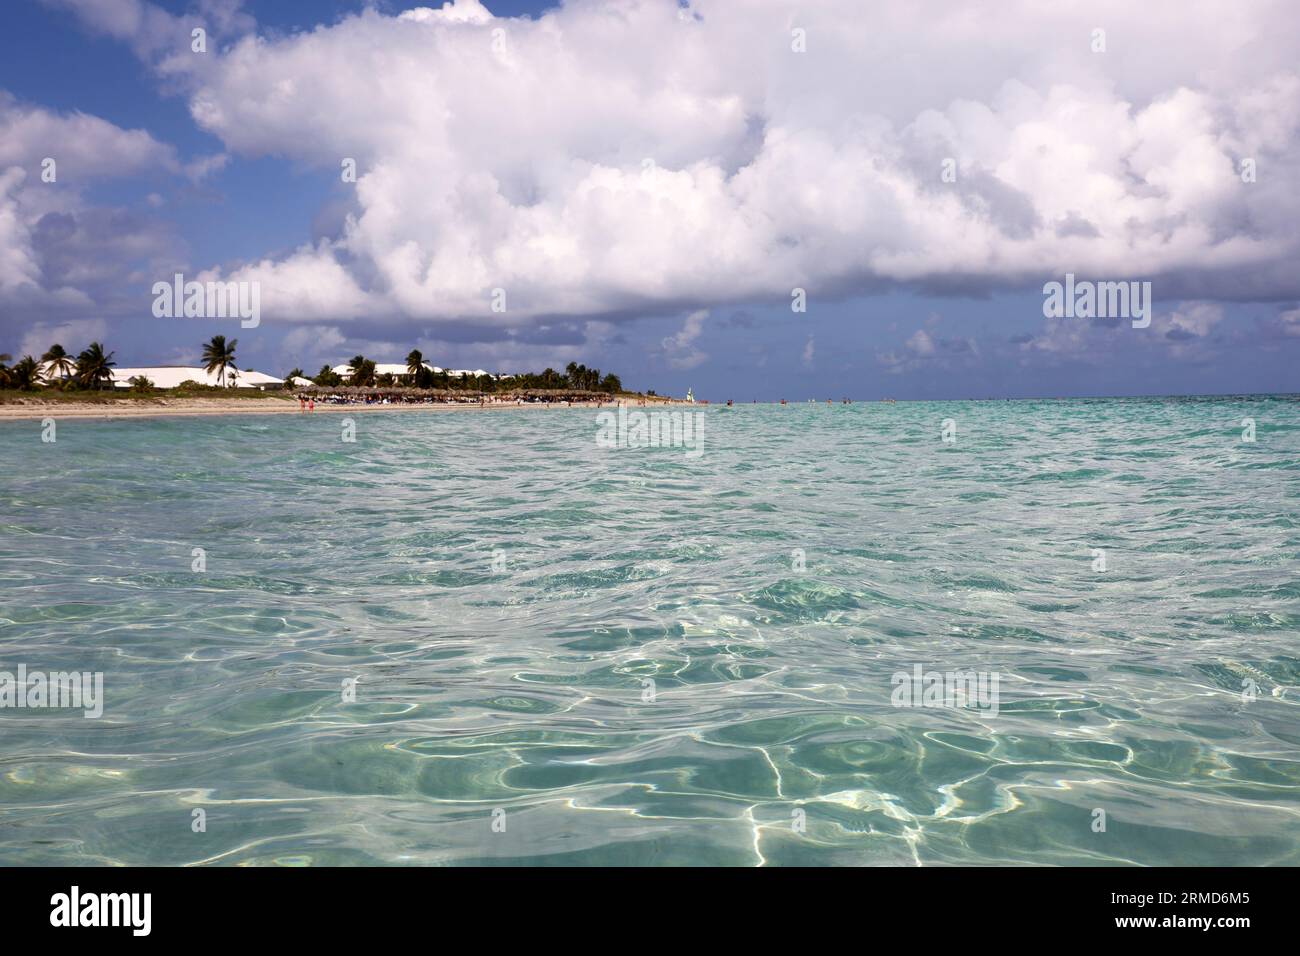 Vue défocalisée de la surface de l'océan à la plage tropicale avec les gens, la côte sablonneuse et les cocotiers. Station balnéaire sur l'île des Caraïbes avec de l'eau claire Banque D'Images